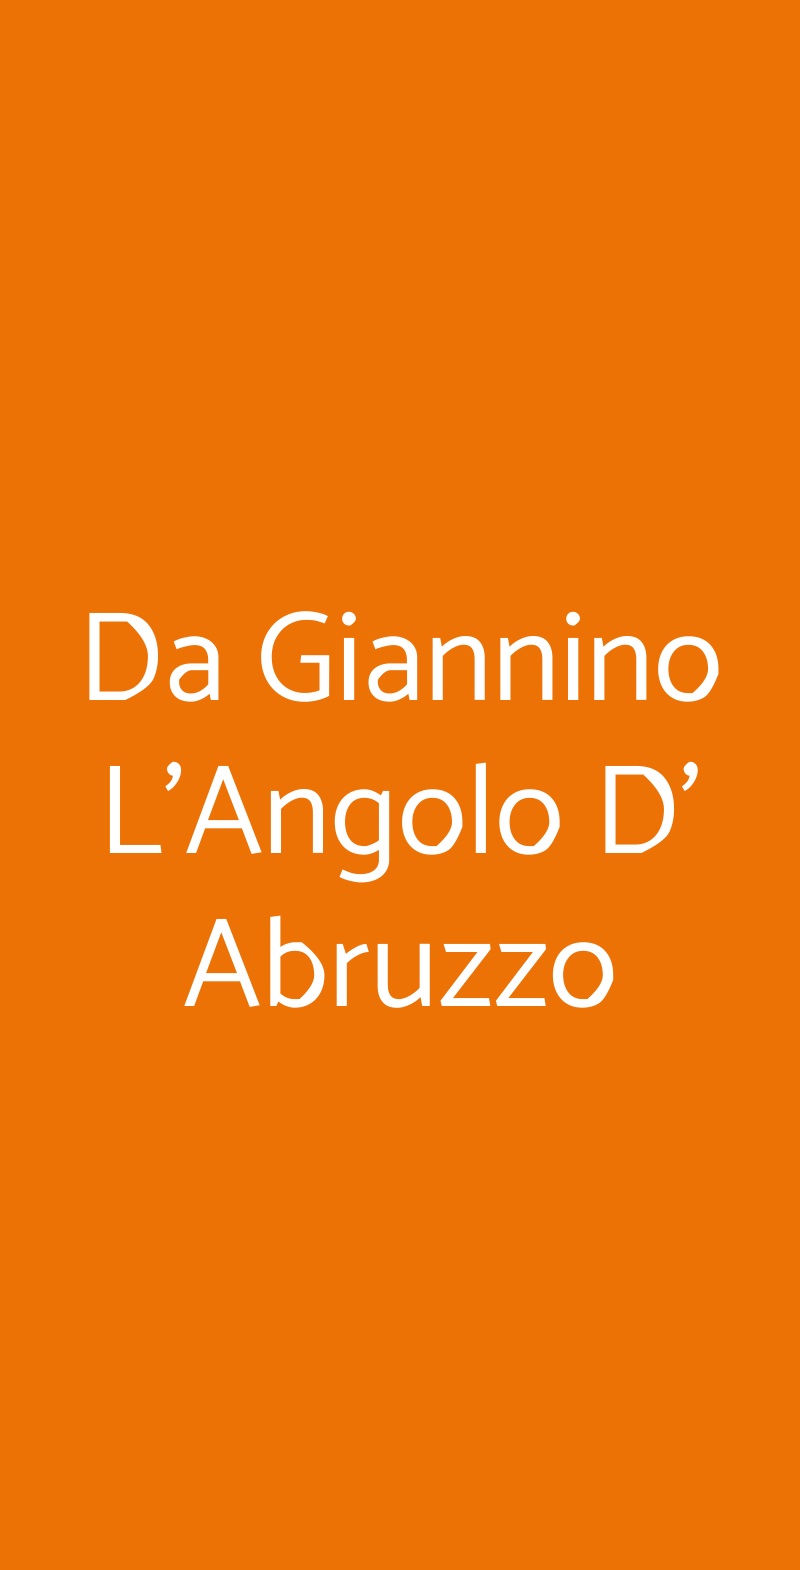 Da Giannino L'Angolo D' Abruzzo Torino menù 1 pagina